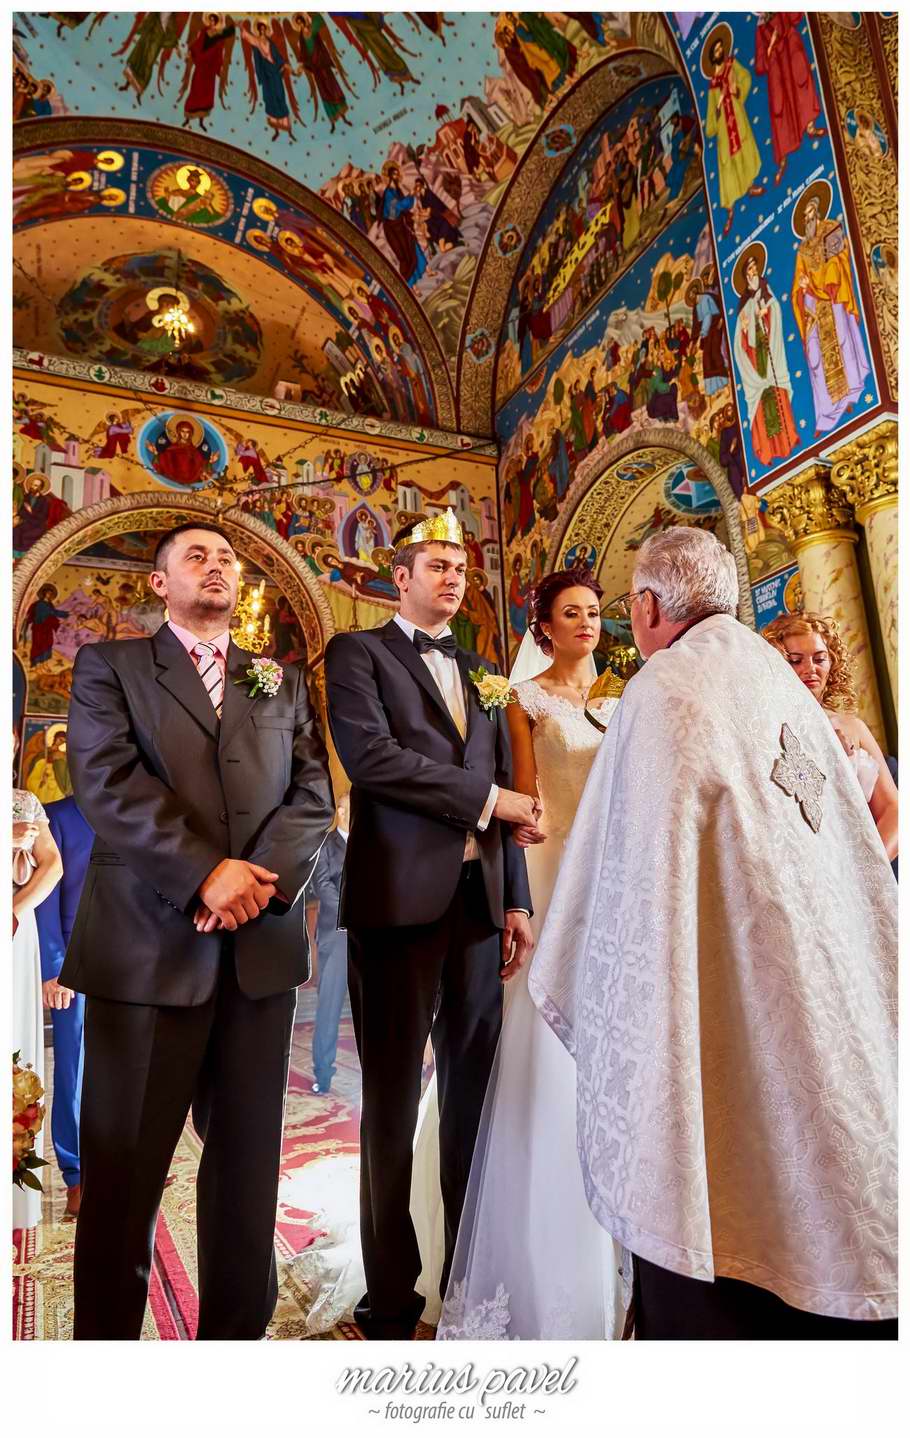 Foto nunta Casa Armatei din Brasov